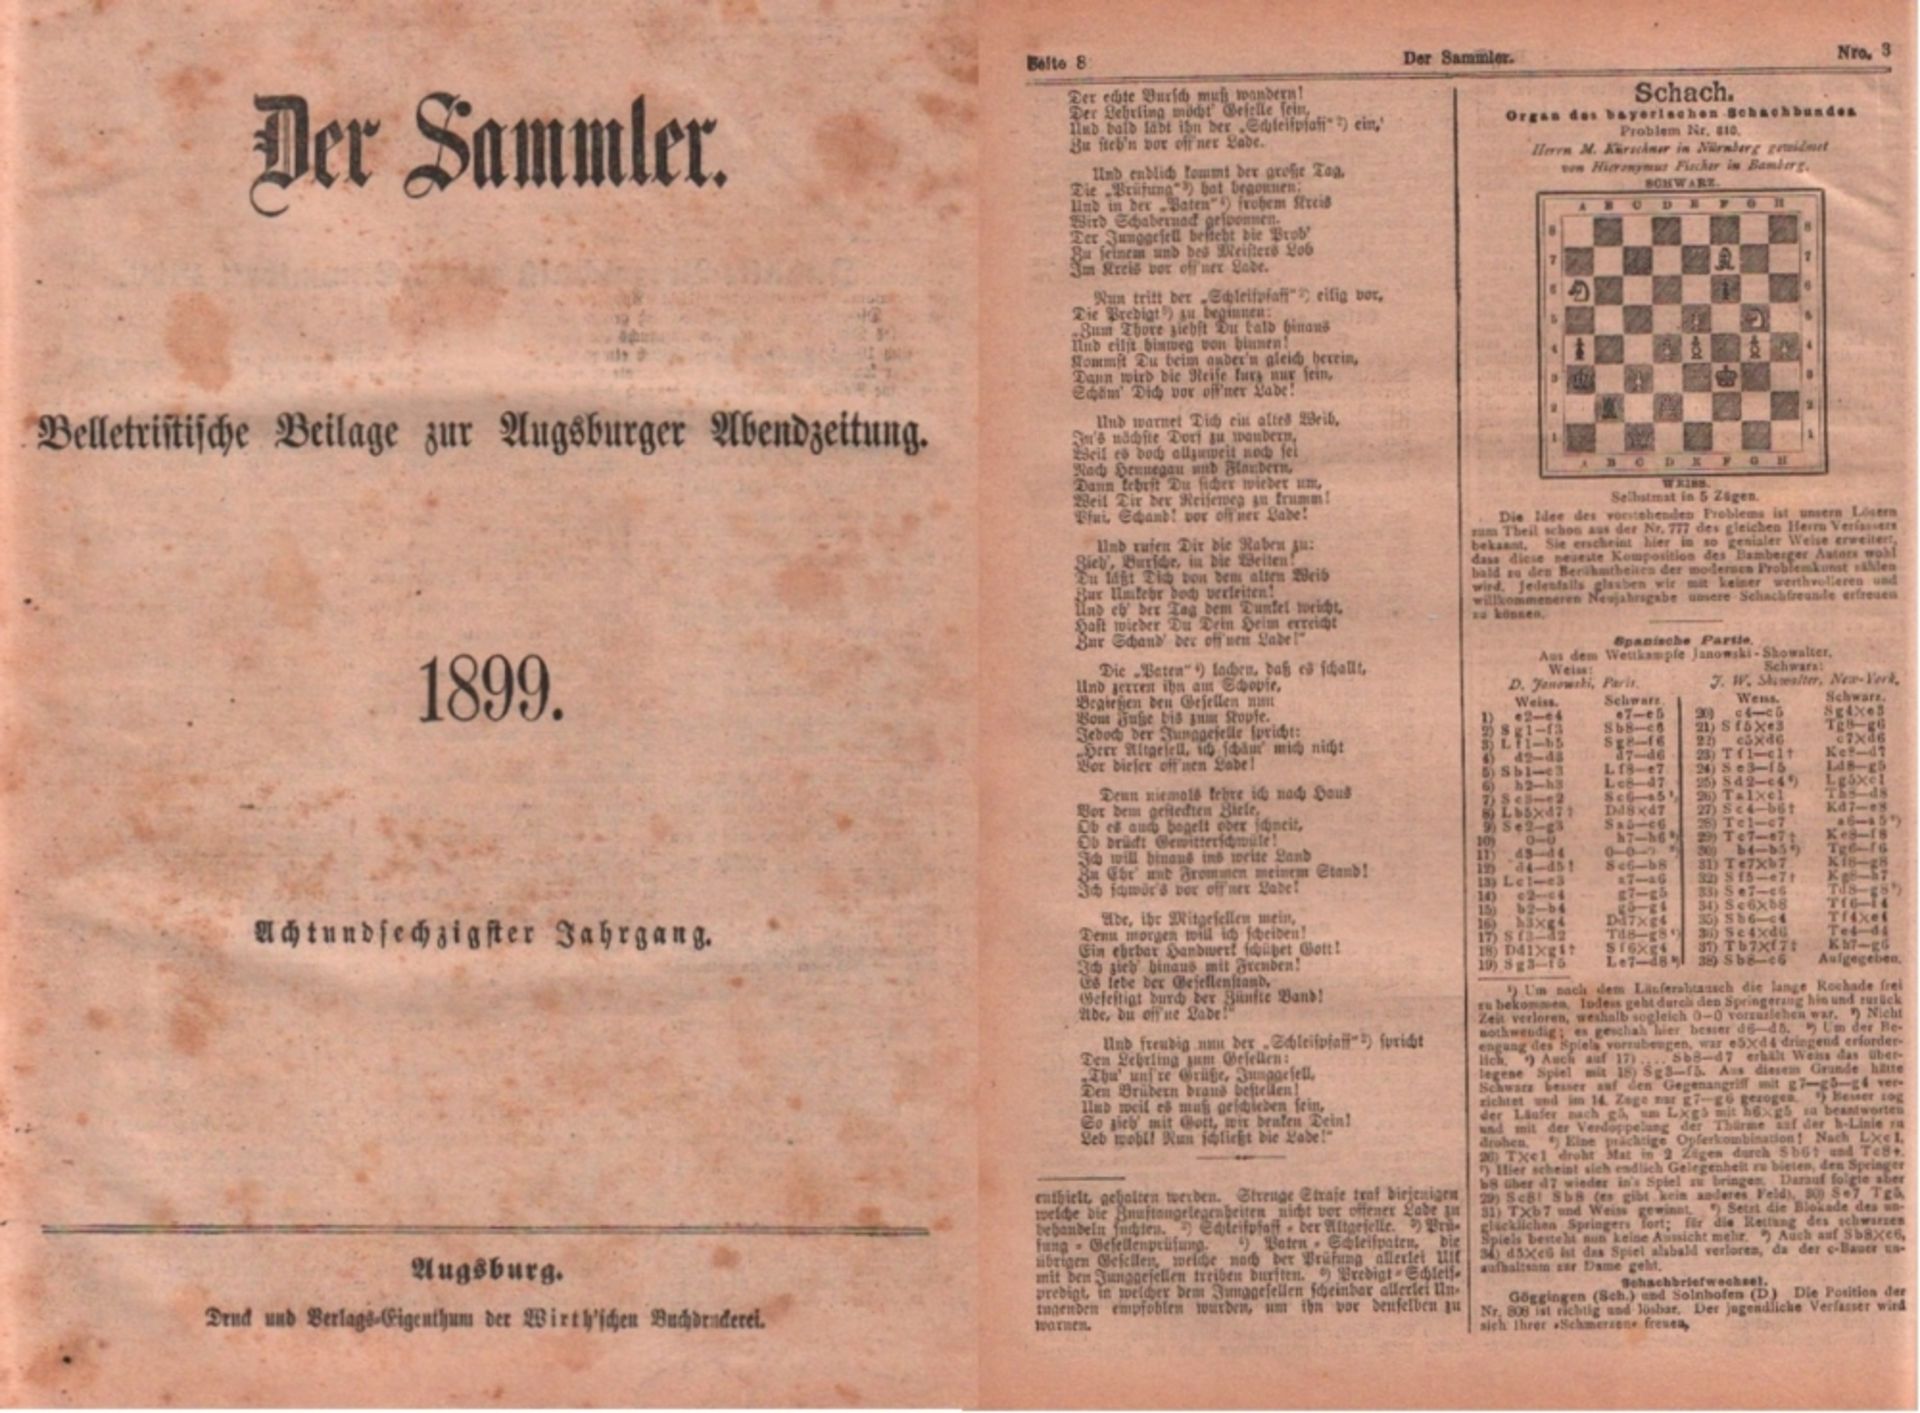 Der Sammler - 1899. Belletristische Beilage zur "Augsburger Abendzeitung". Für die Redaktion